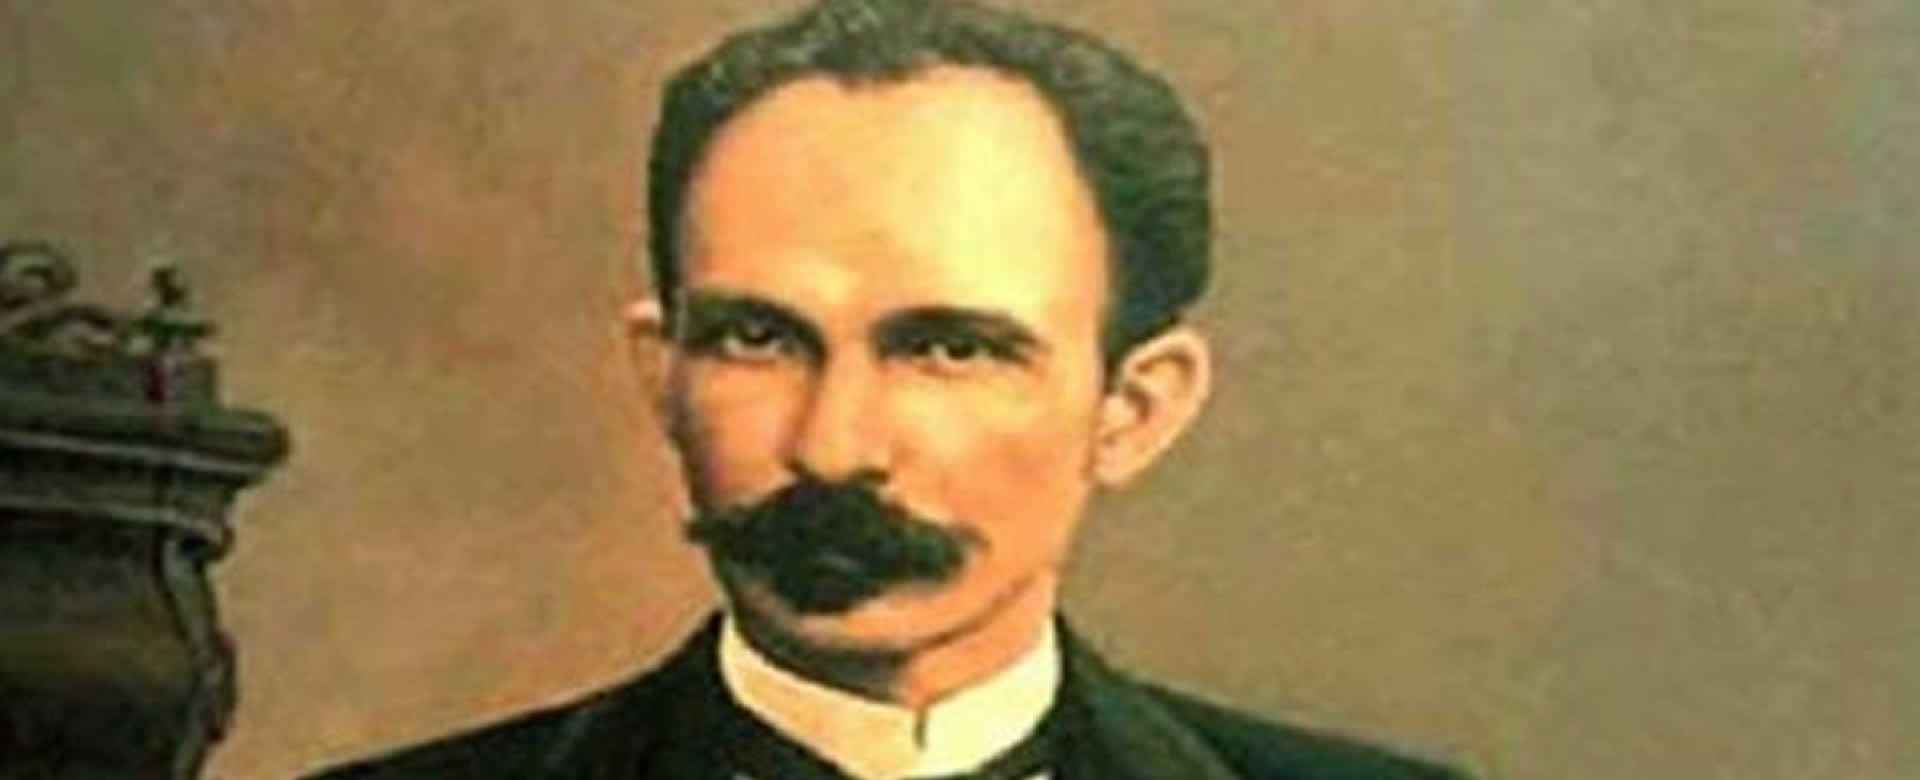 José Martí: “Yo soy bueno, y como bueno, moriré de cara al sol”